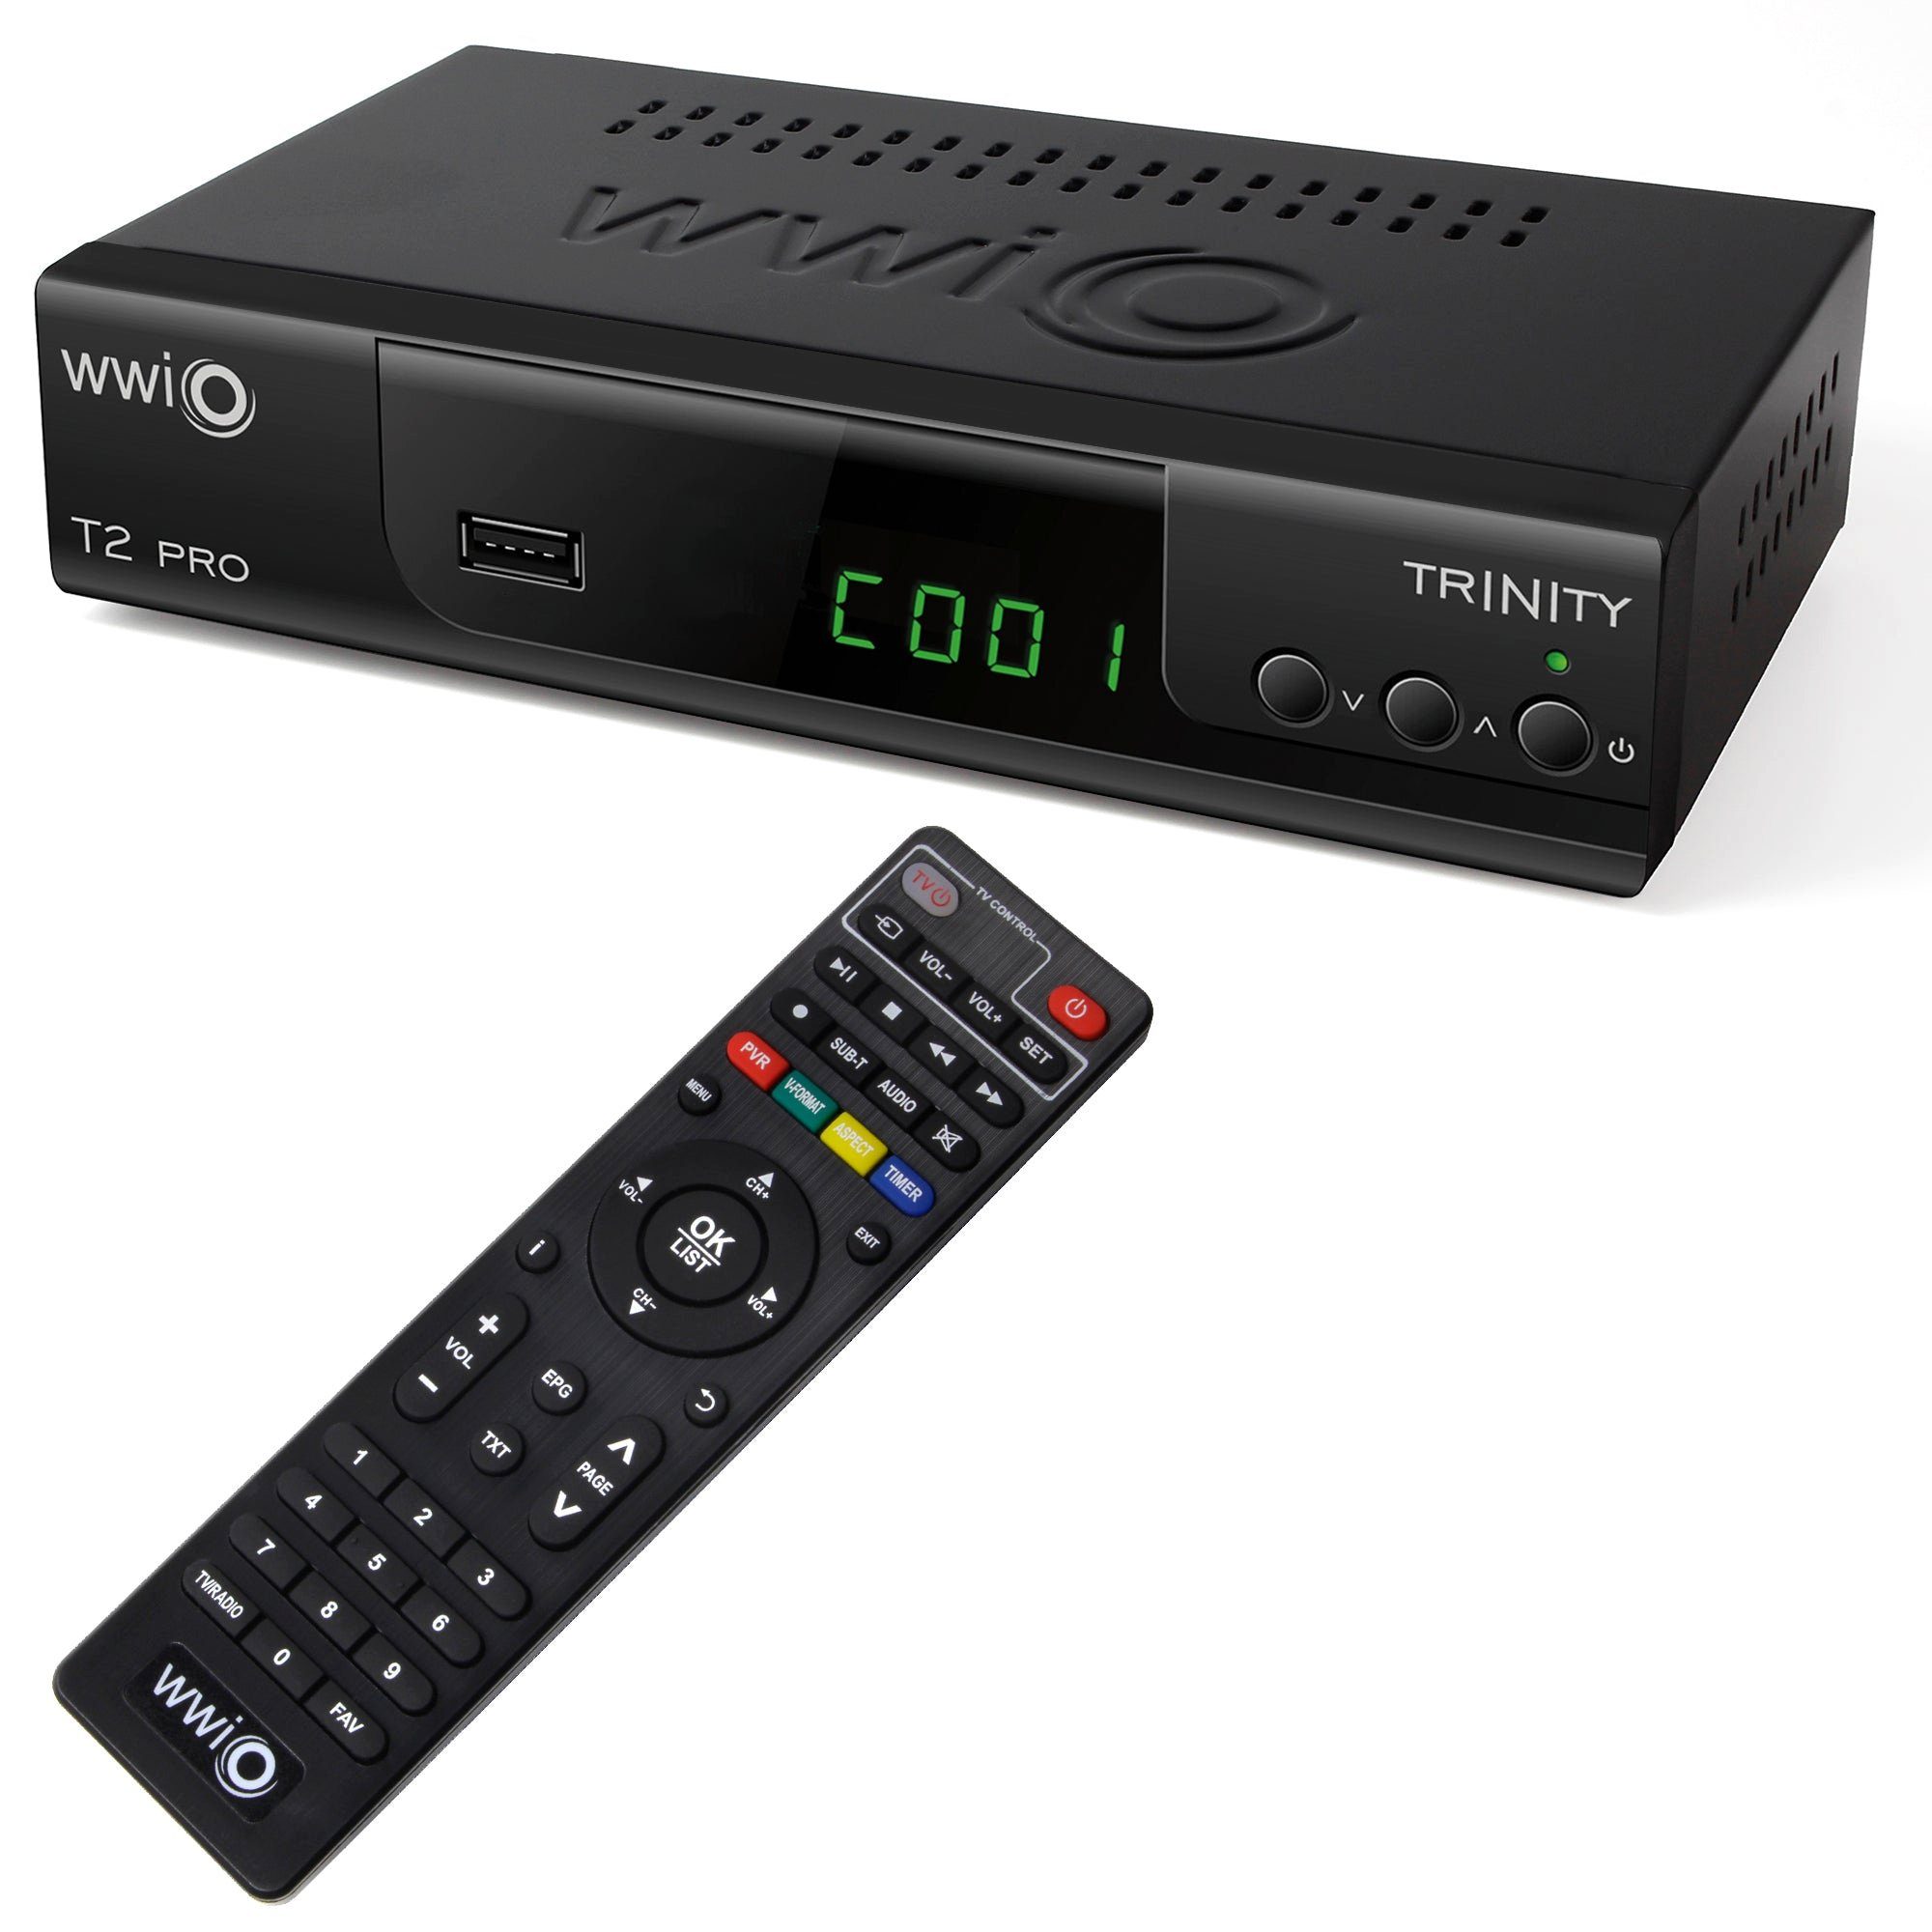 PVR DVB-T2, HDMI, HD PRO FullHD, WWIO T2 DVB-T2 2-in-1 Trinity WWIO with RCU Receiver USB,